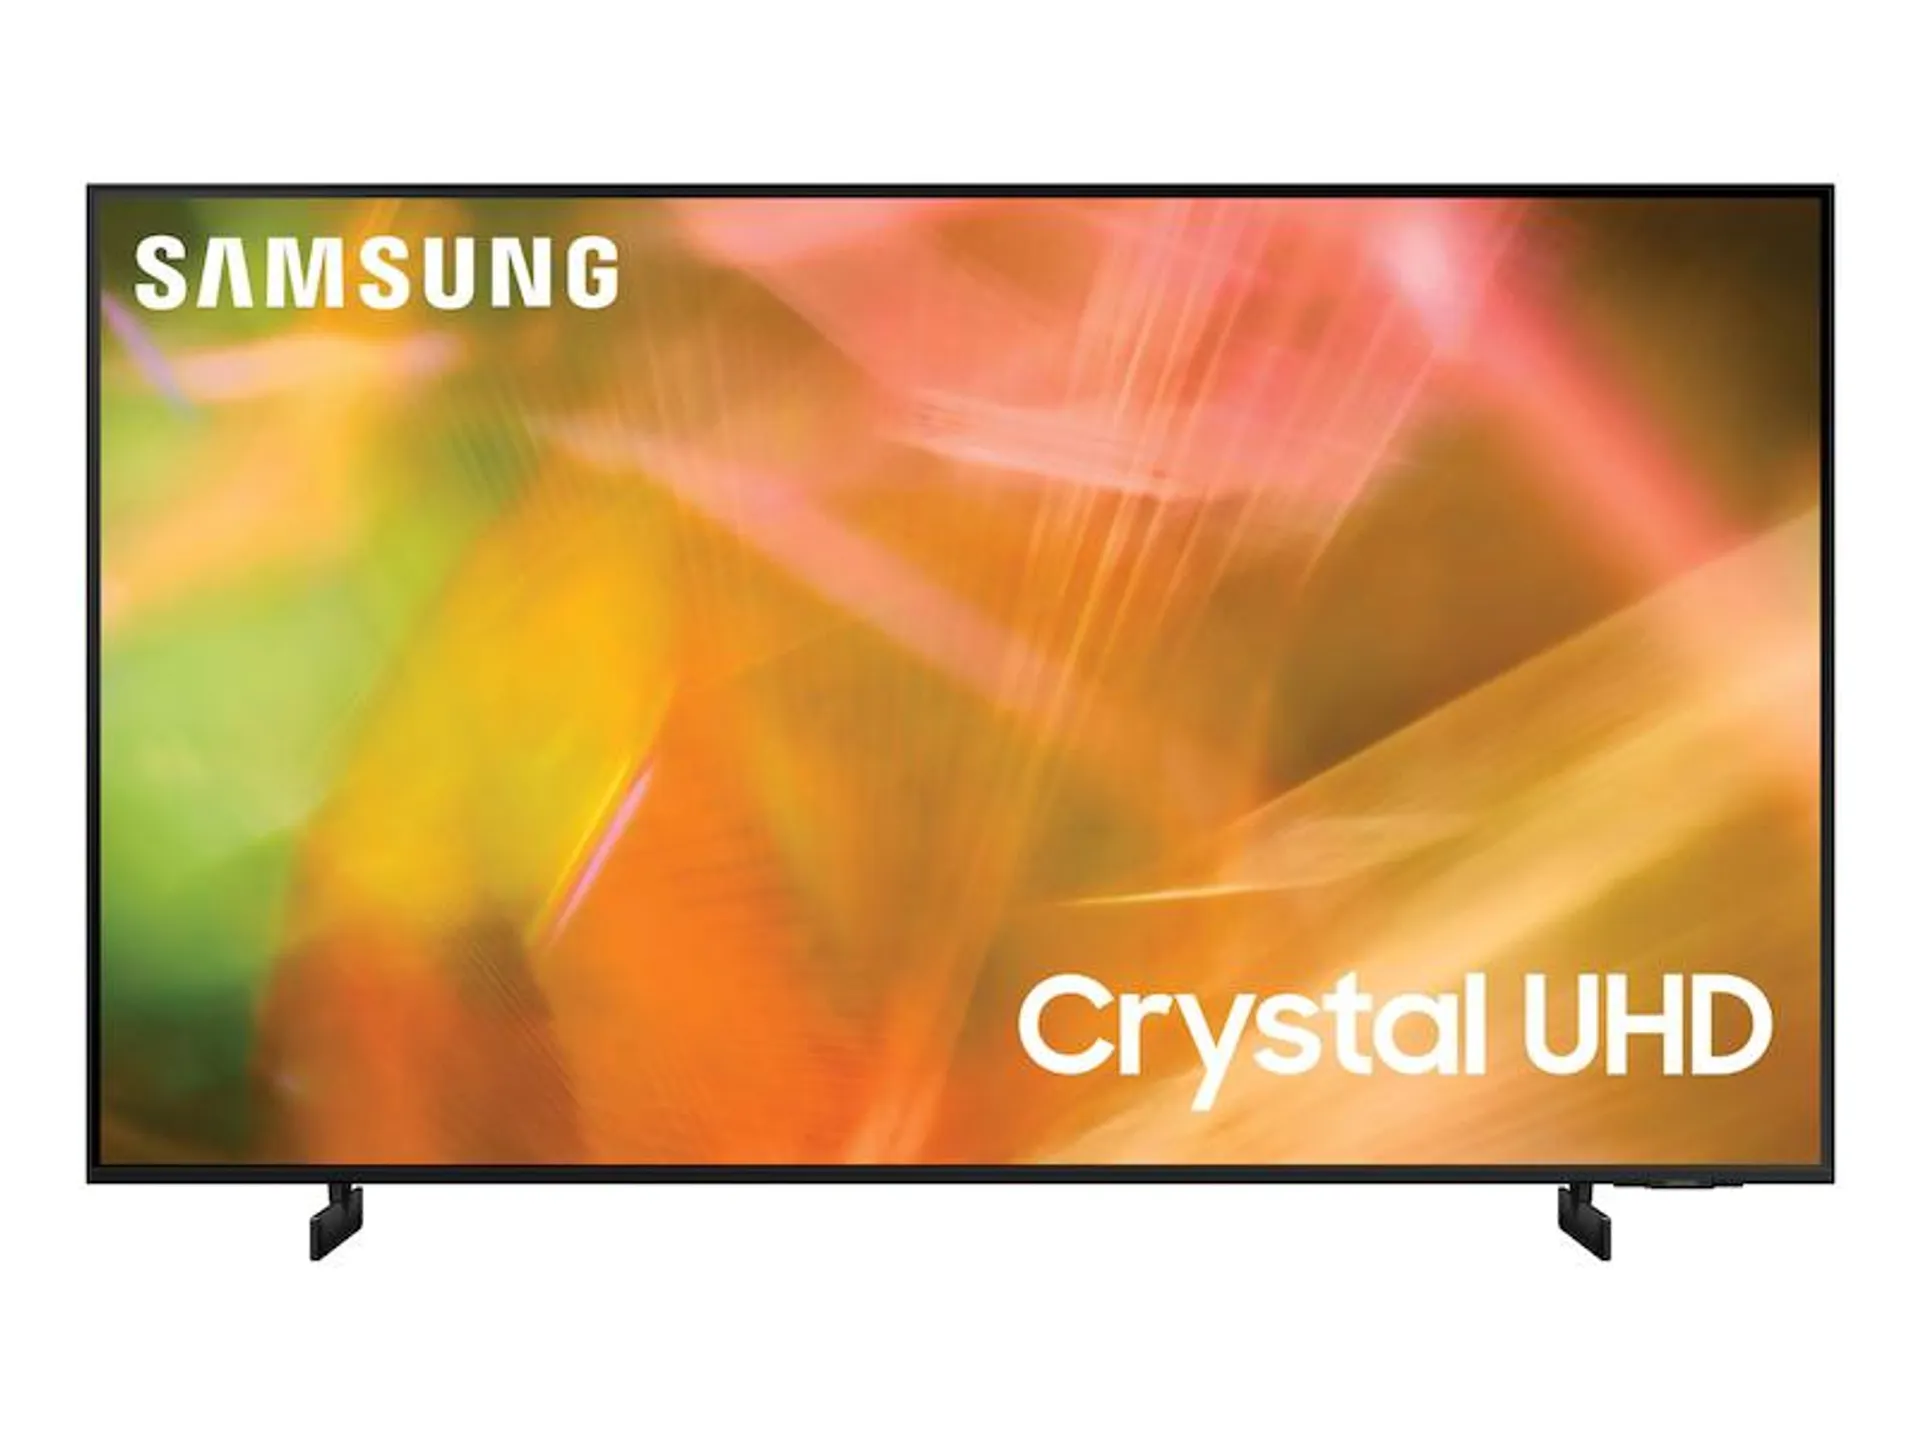 AU8000 Crystal UHD Smart TV (2021)